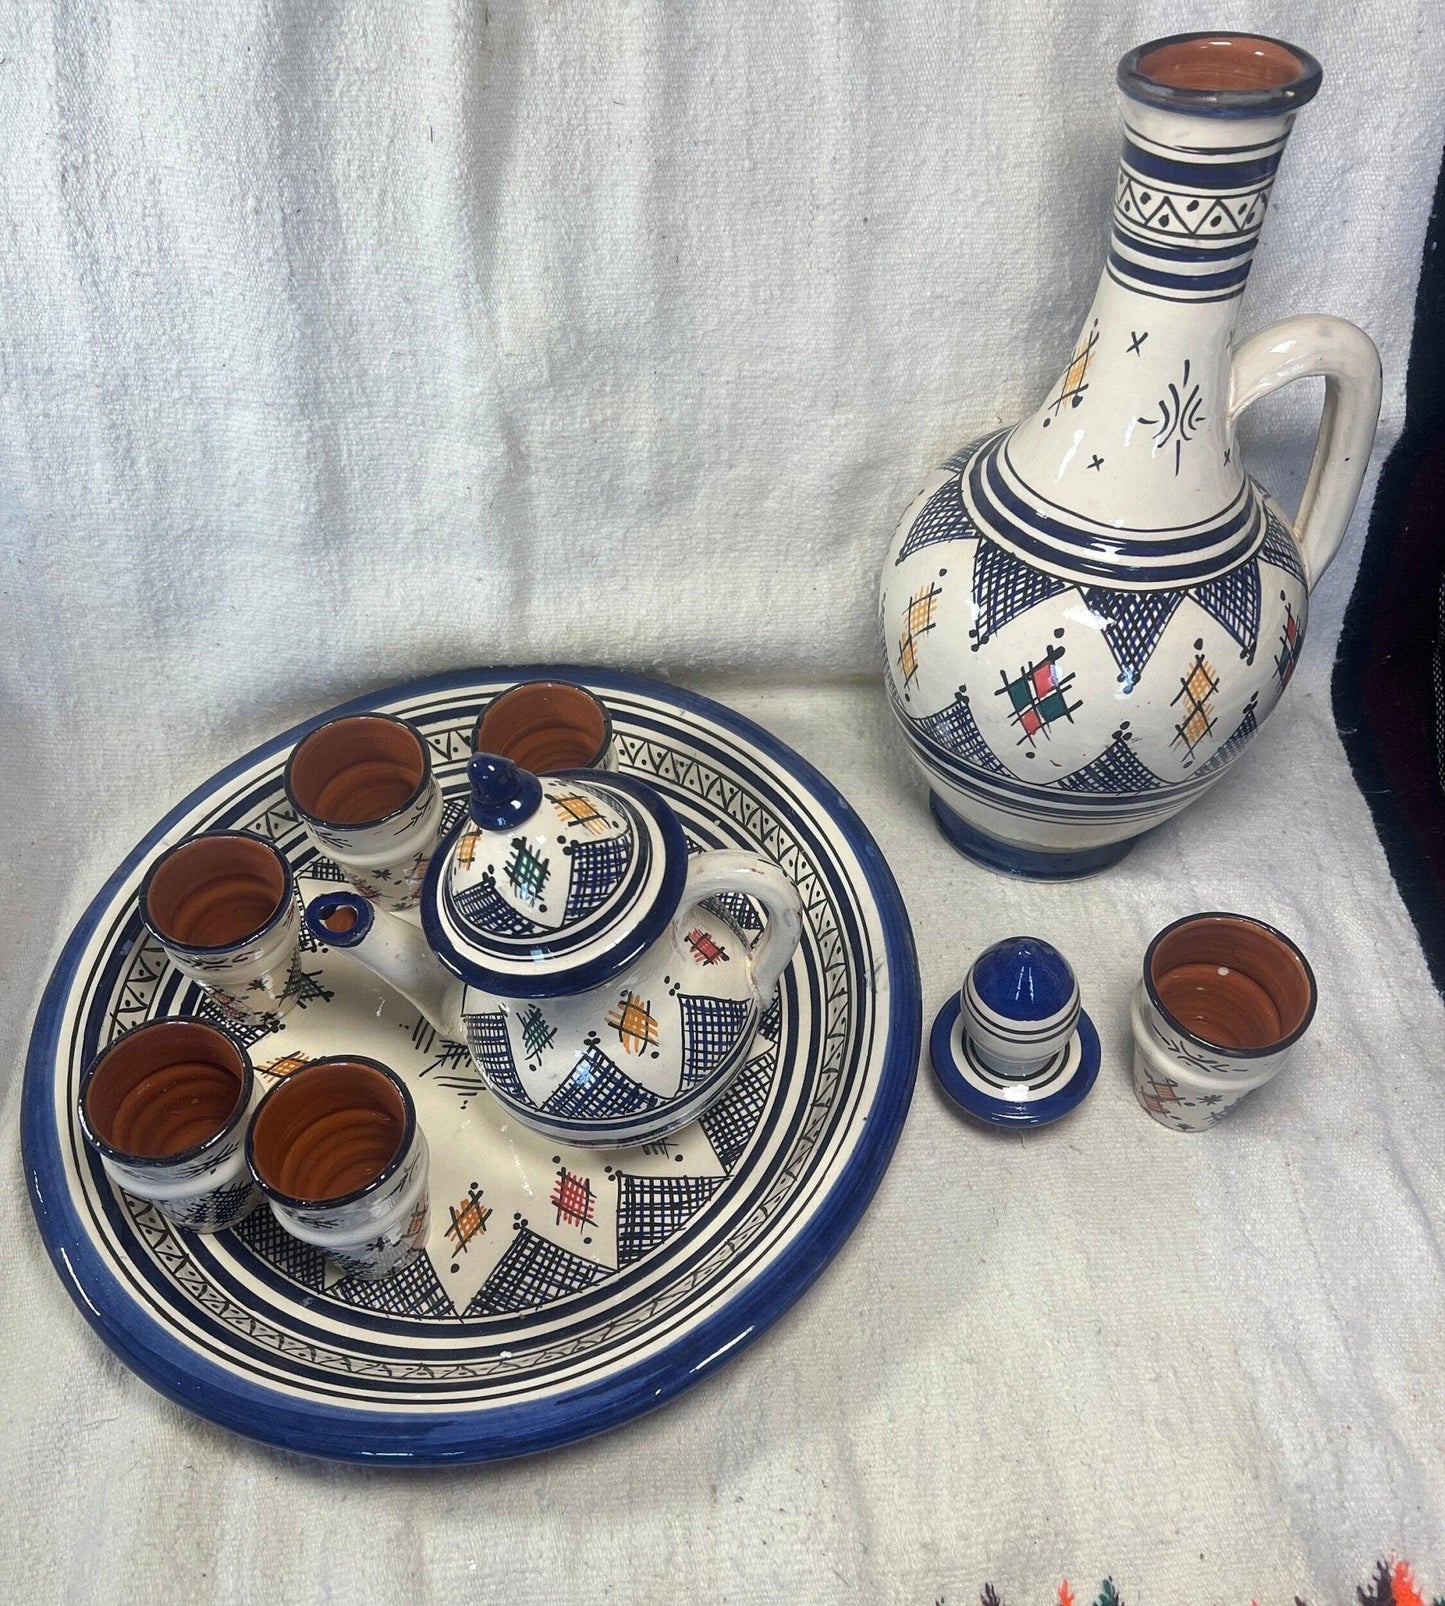 teaput set complete - Amazighrose